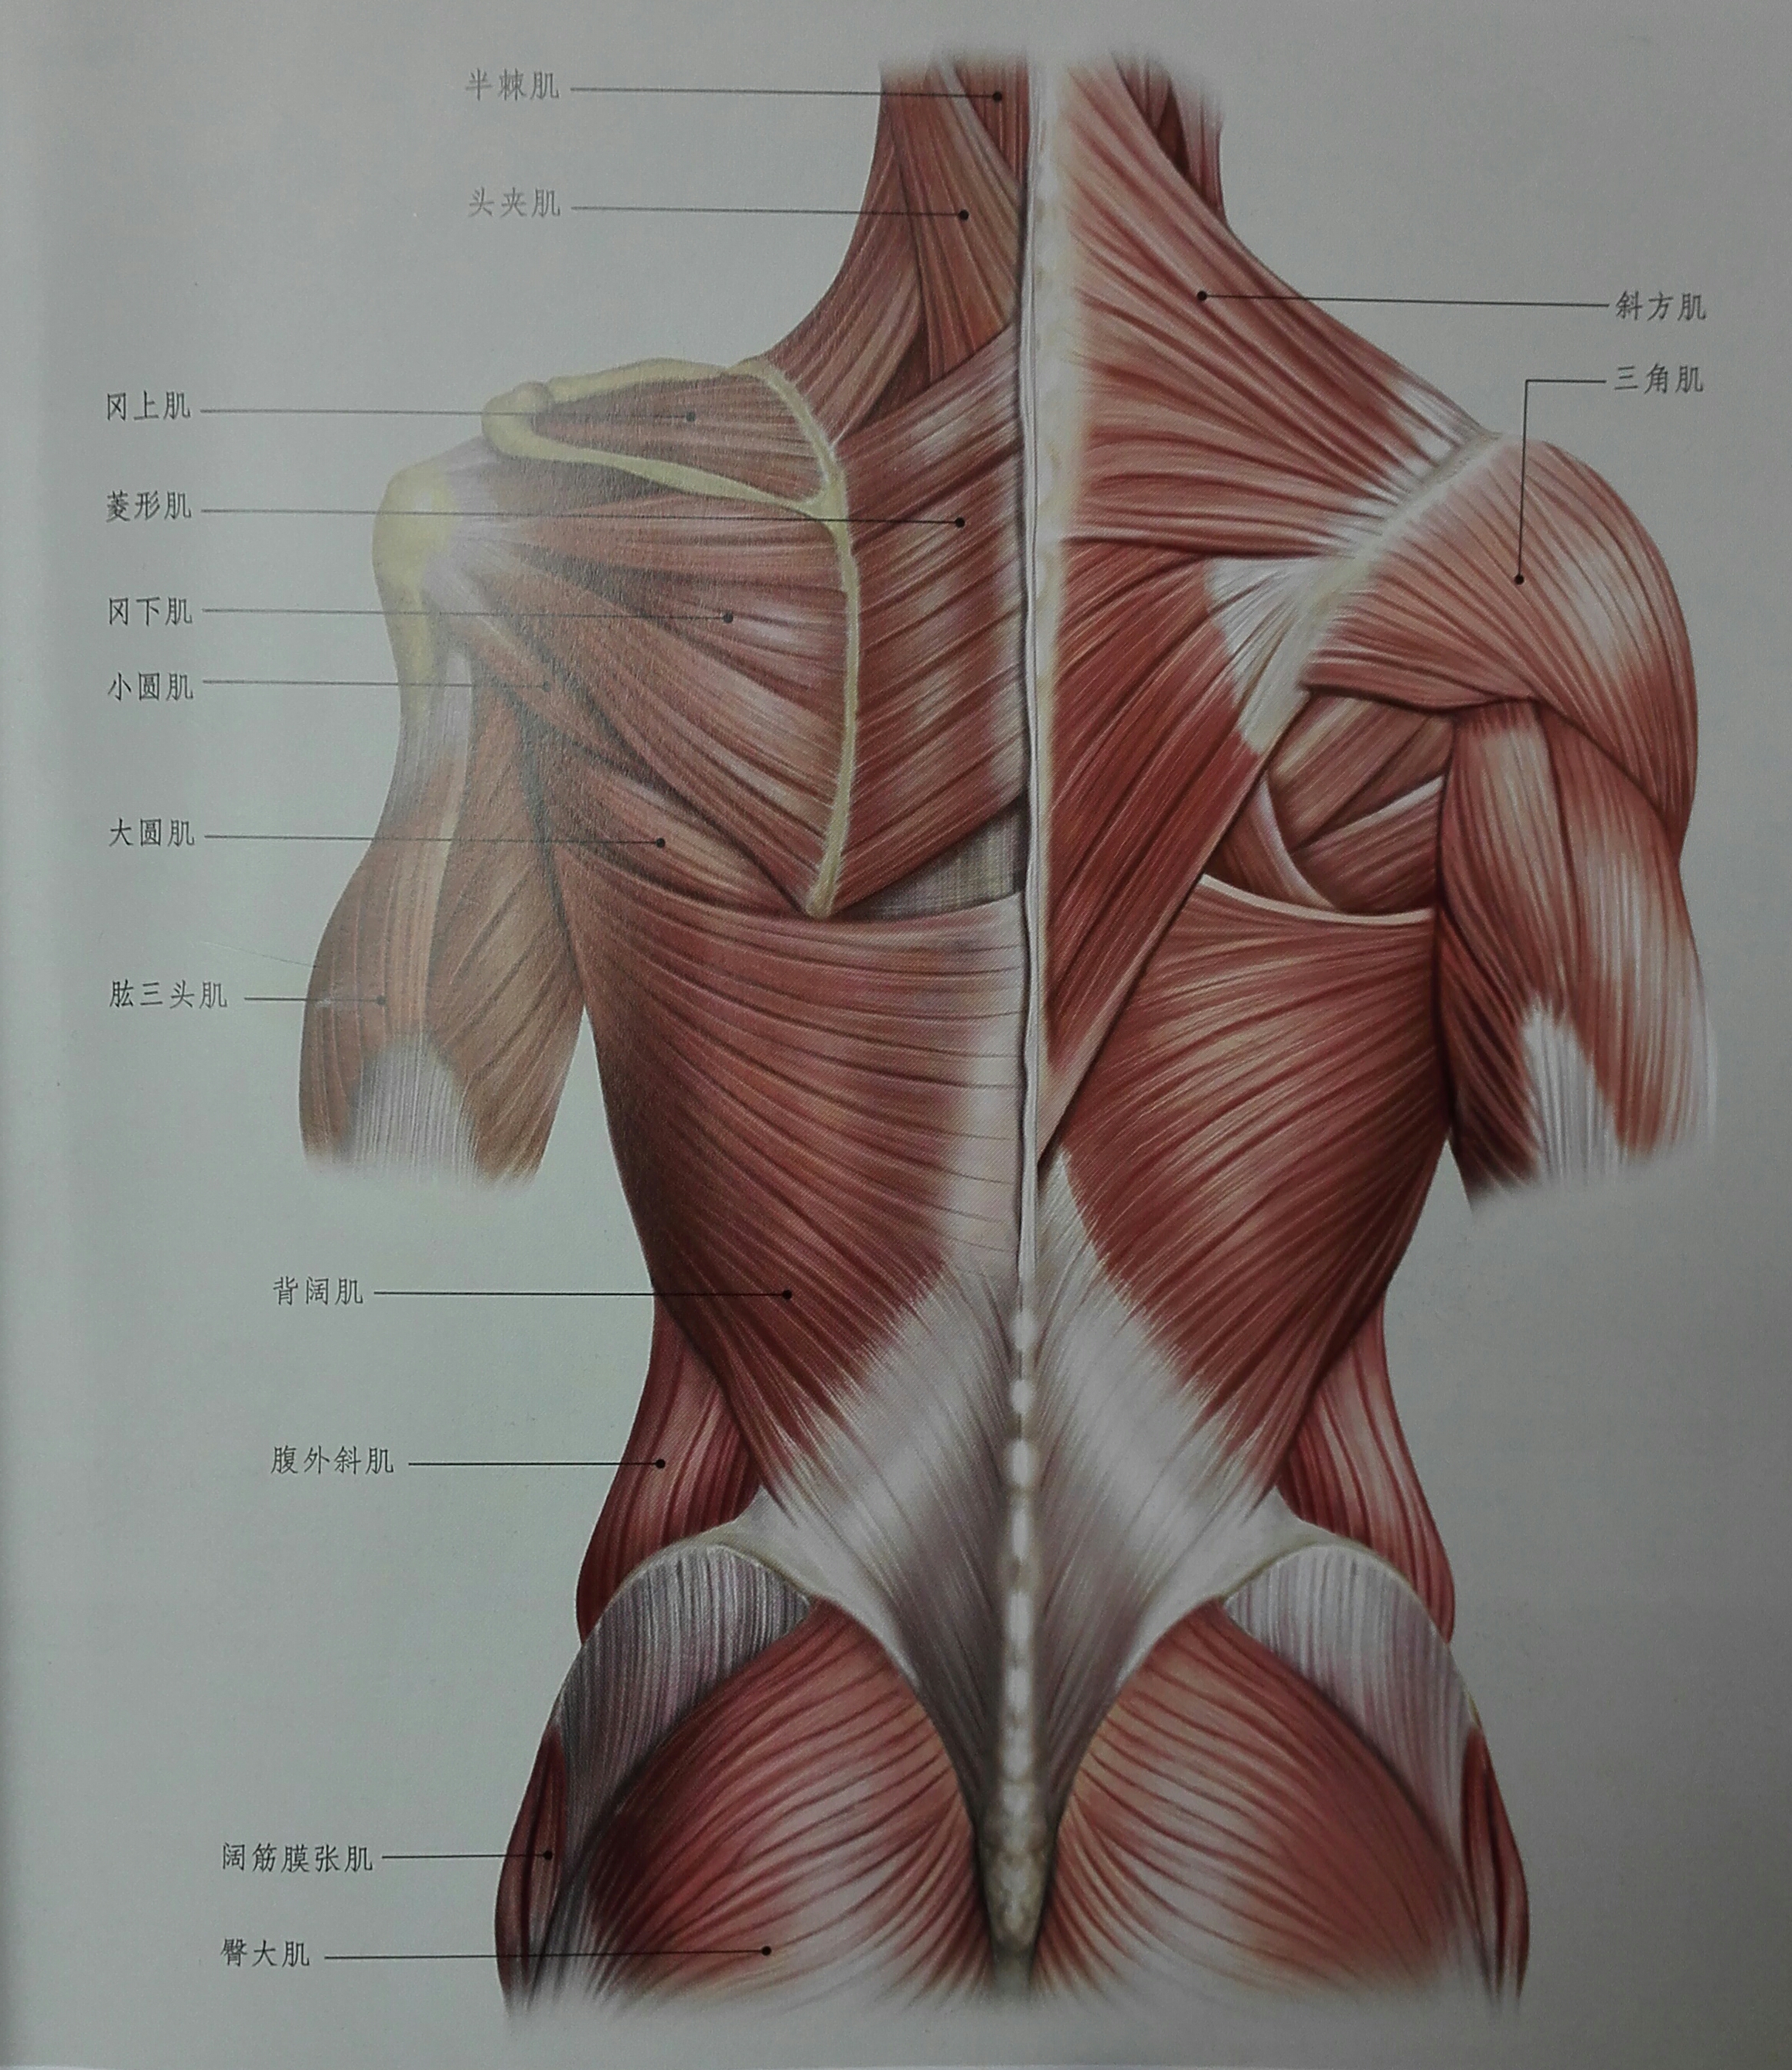 背部肌肉的拉伸(有效缓解背部疲劳紧张)